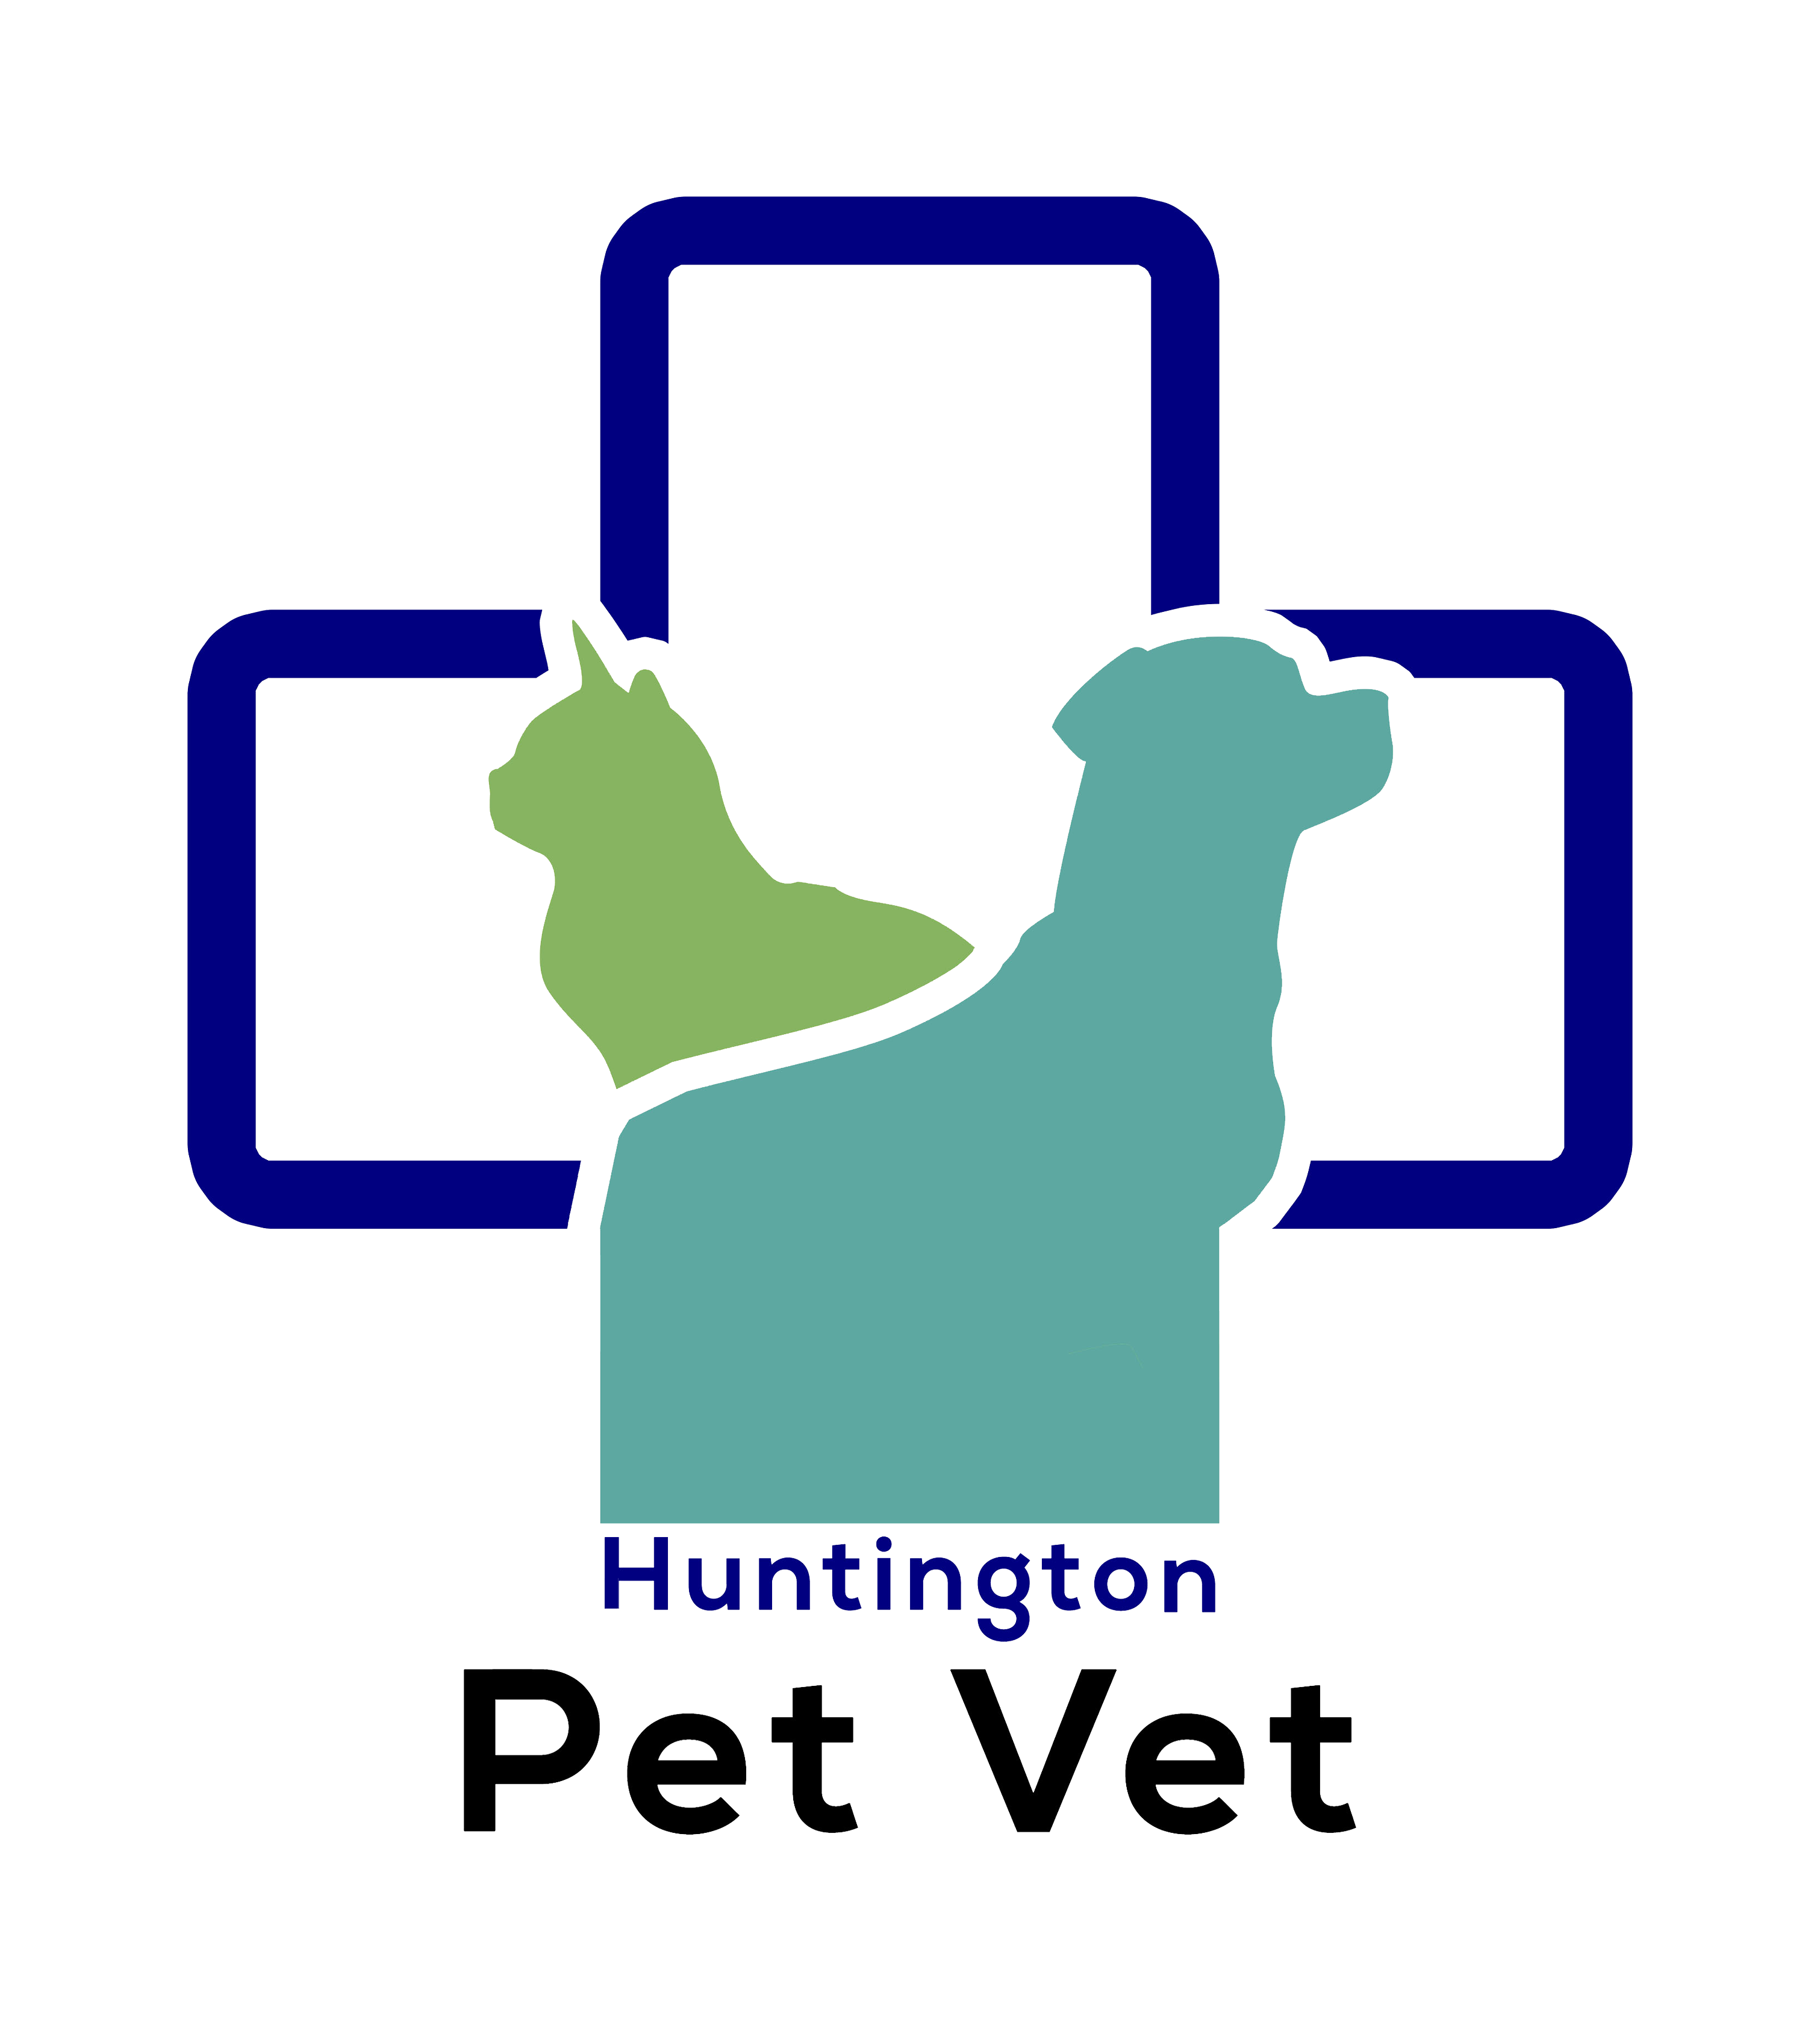 Huntington Beach Pet Vet - Huntington Pet Vet (3022x3372)